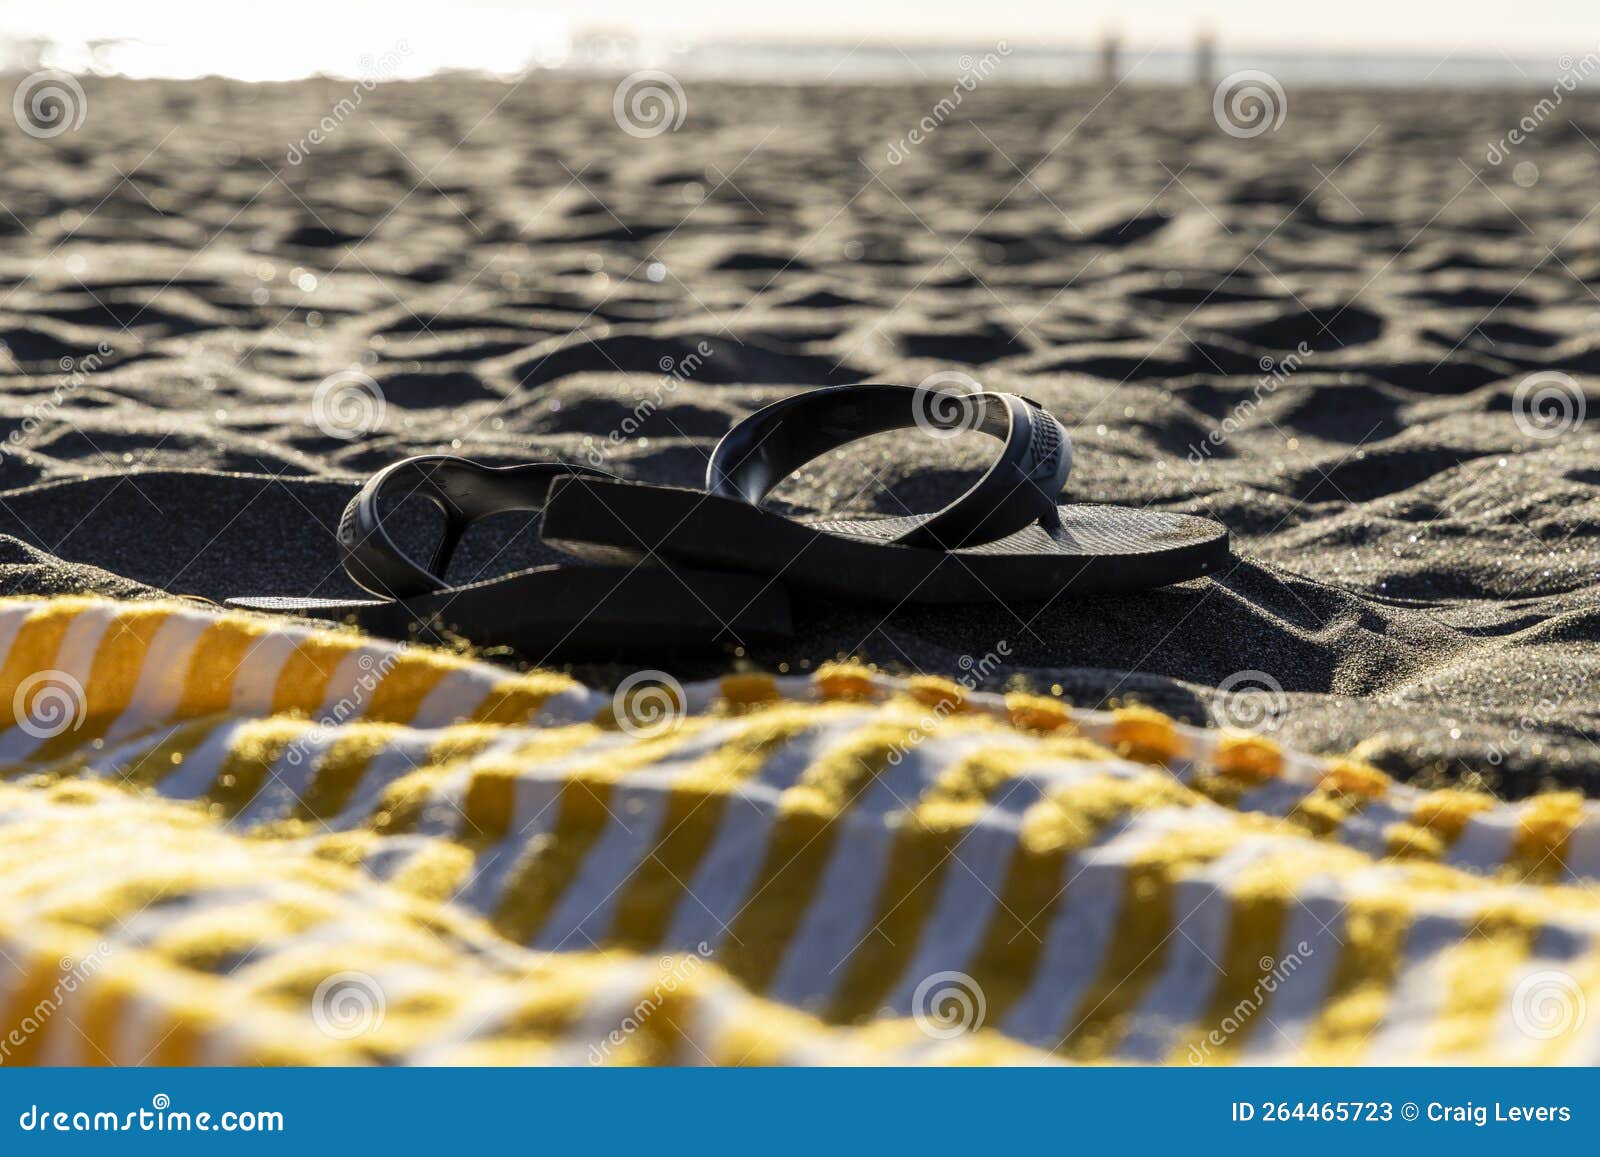 flip-flop sandals on black sand